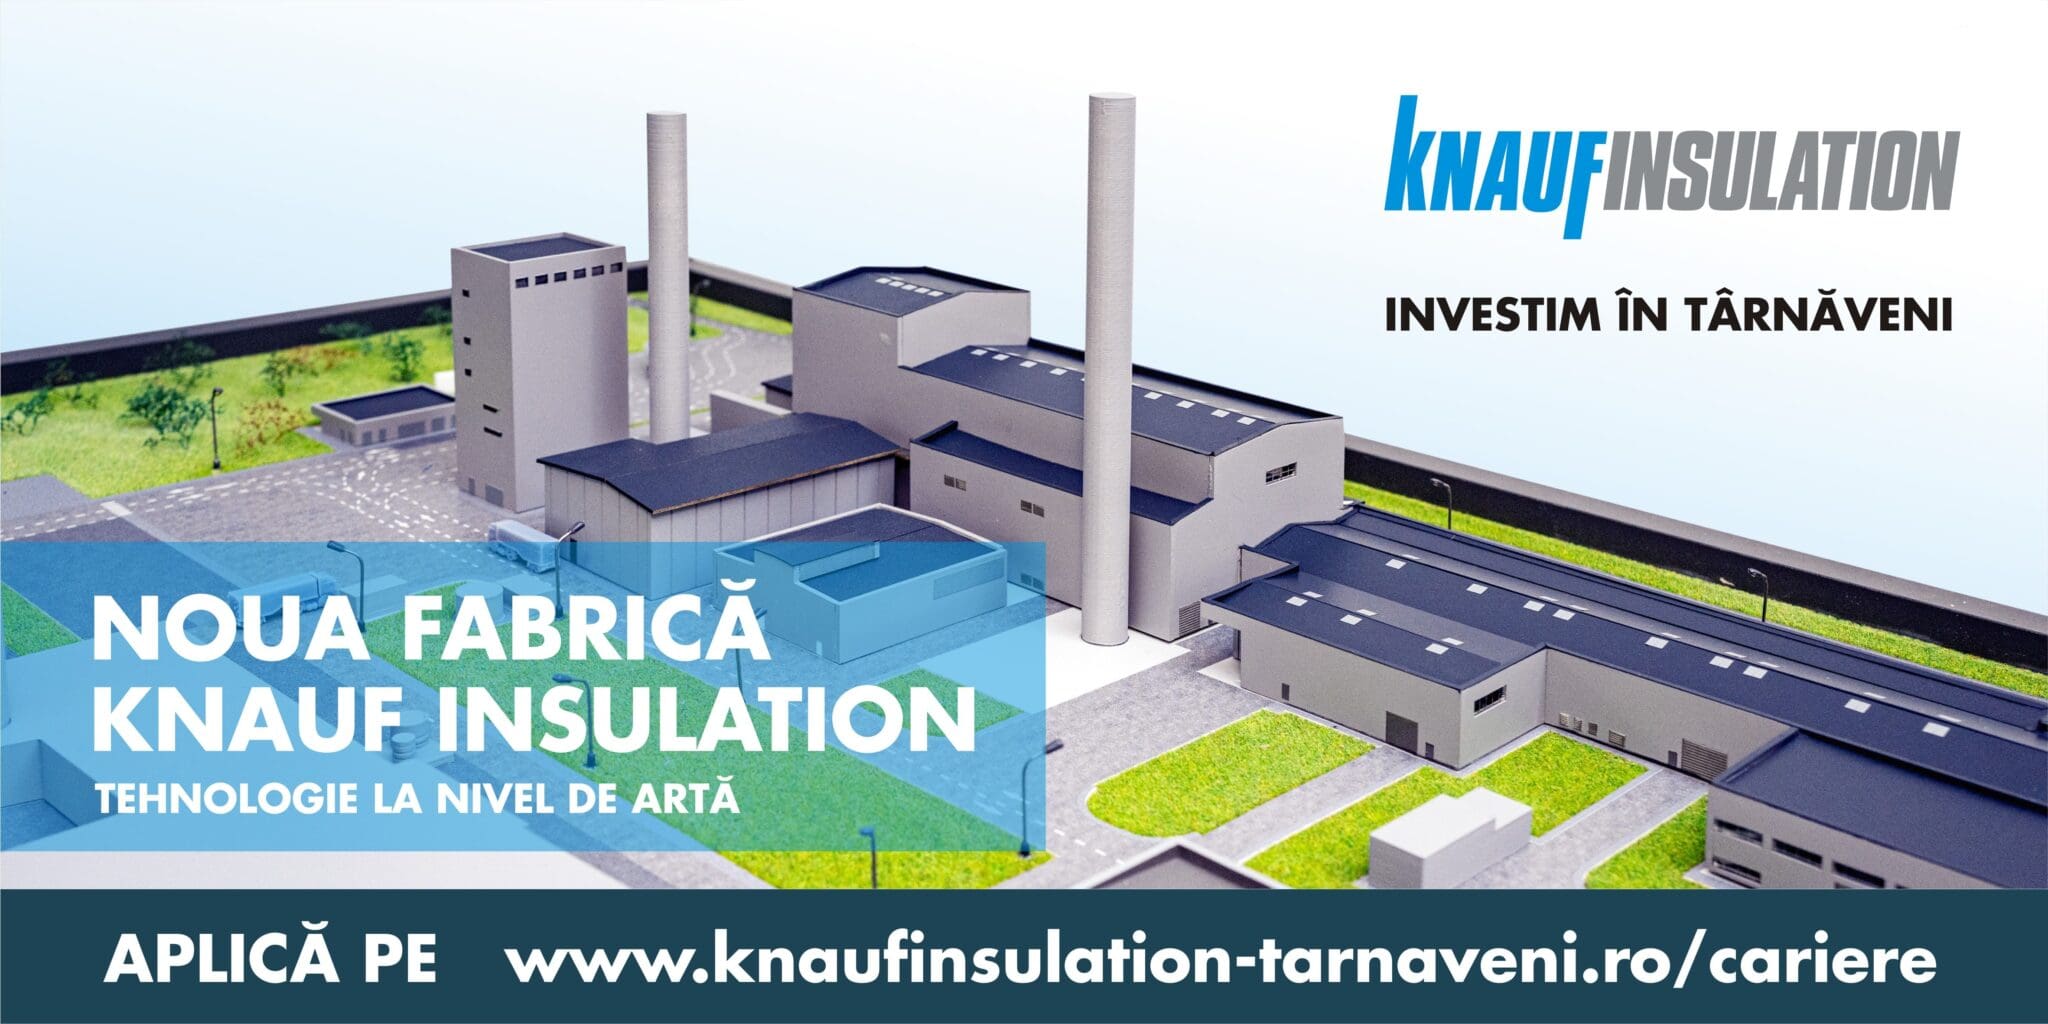 Knauf Insulation Tarnaveni scaled - Knauf Insulation a început construcția noii fabrici din Târnăveni, o investiție de peste 135 milioane euro